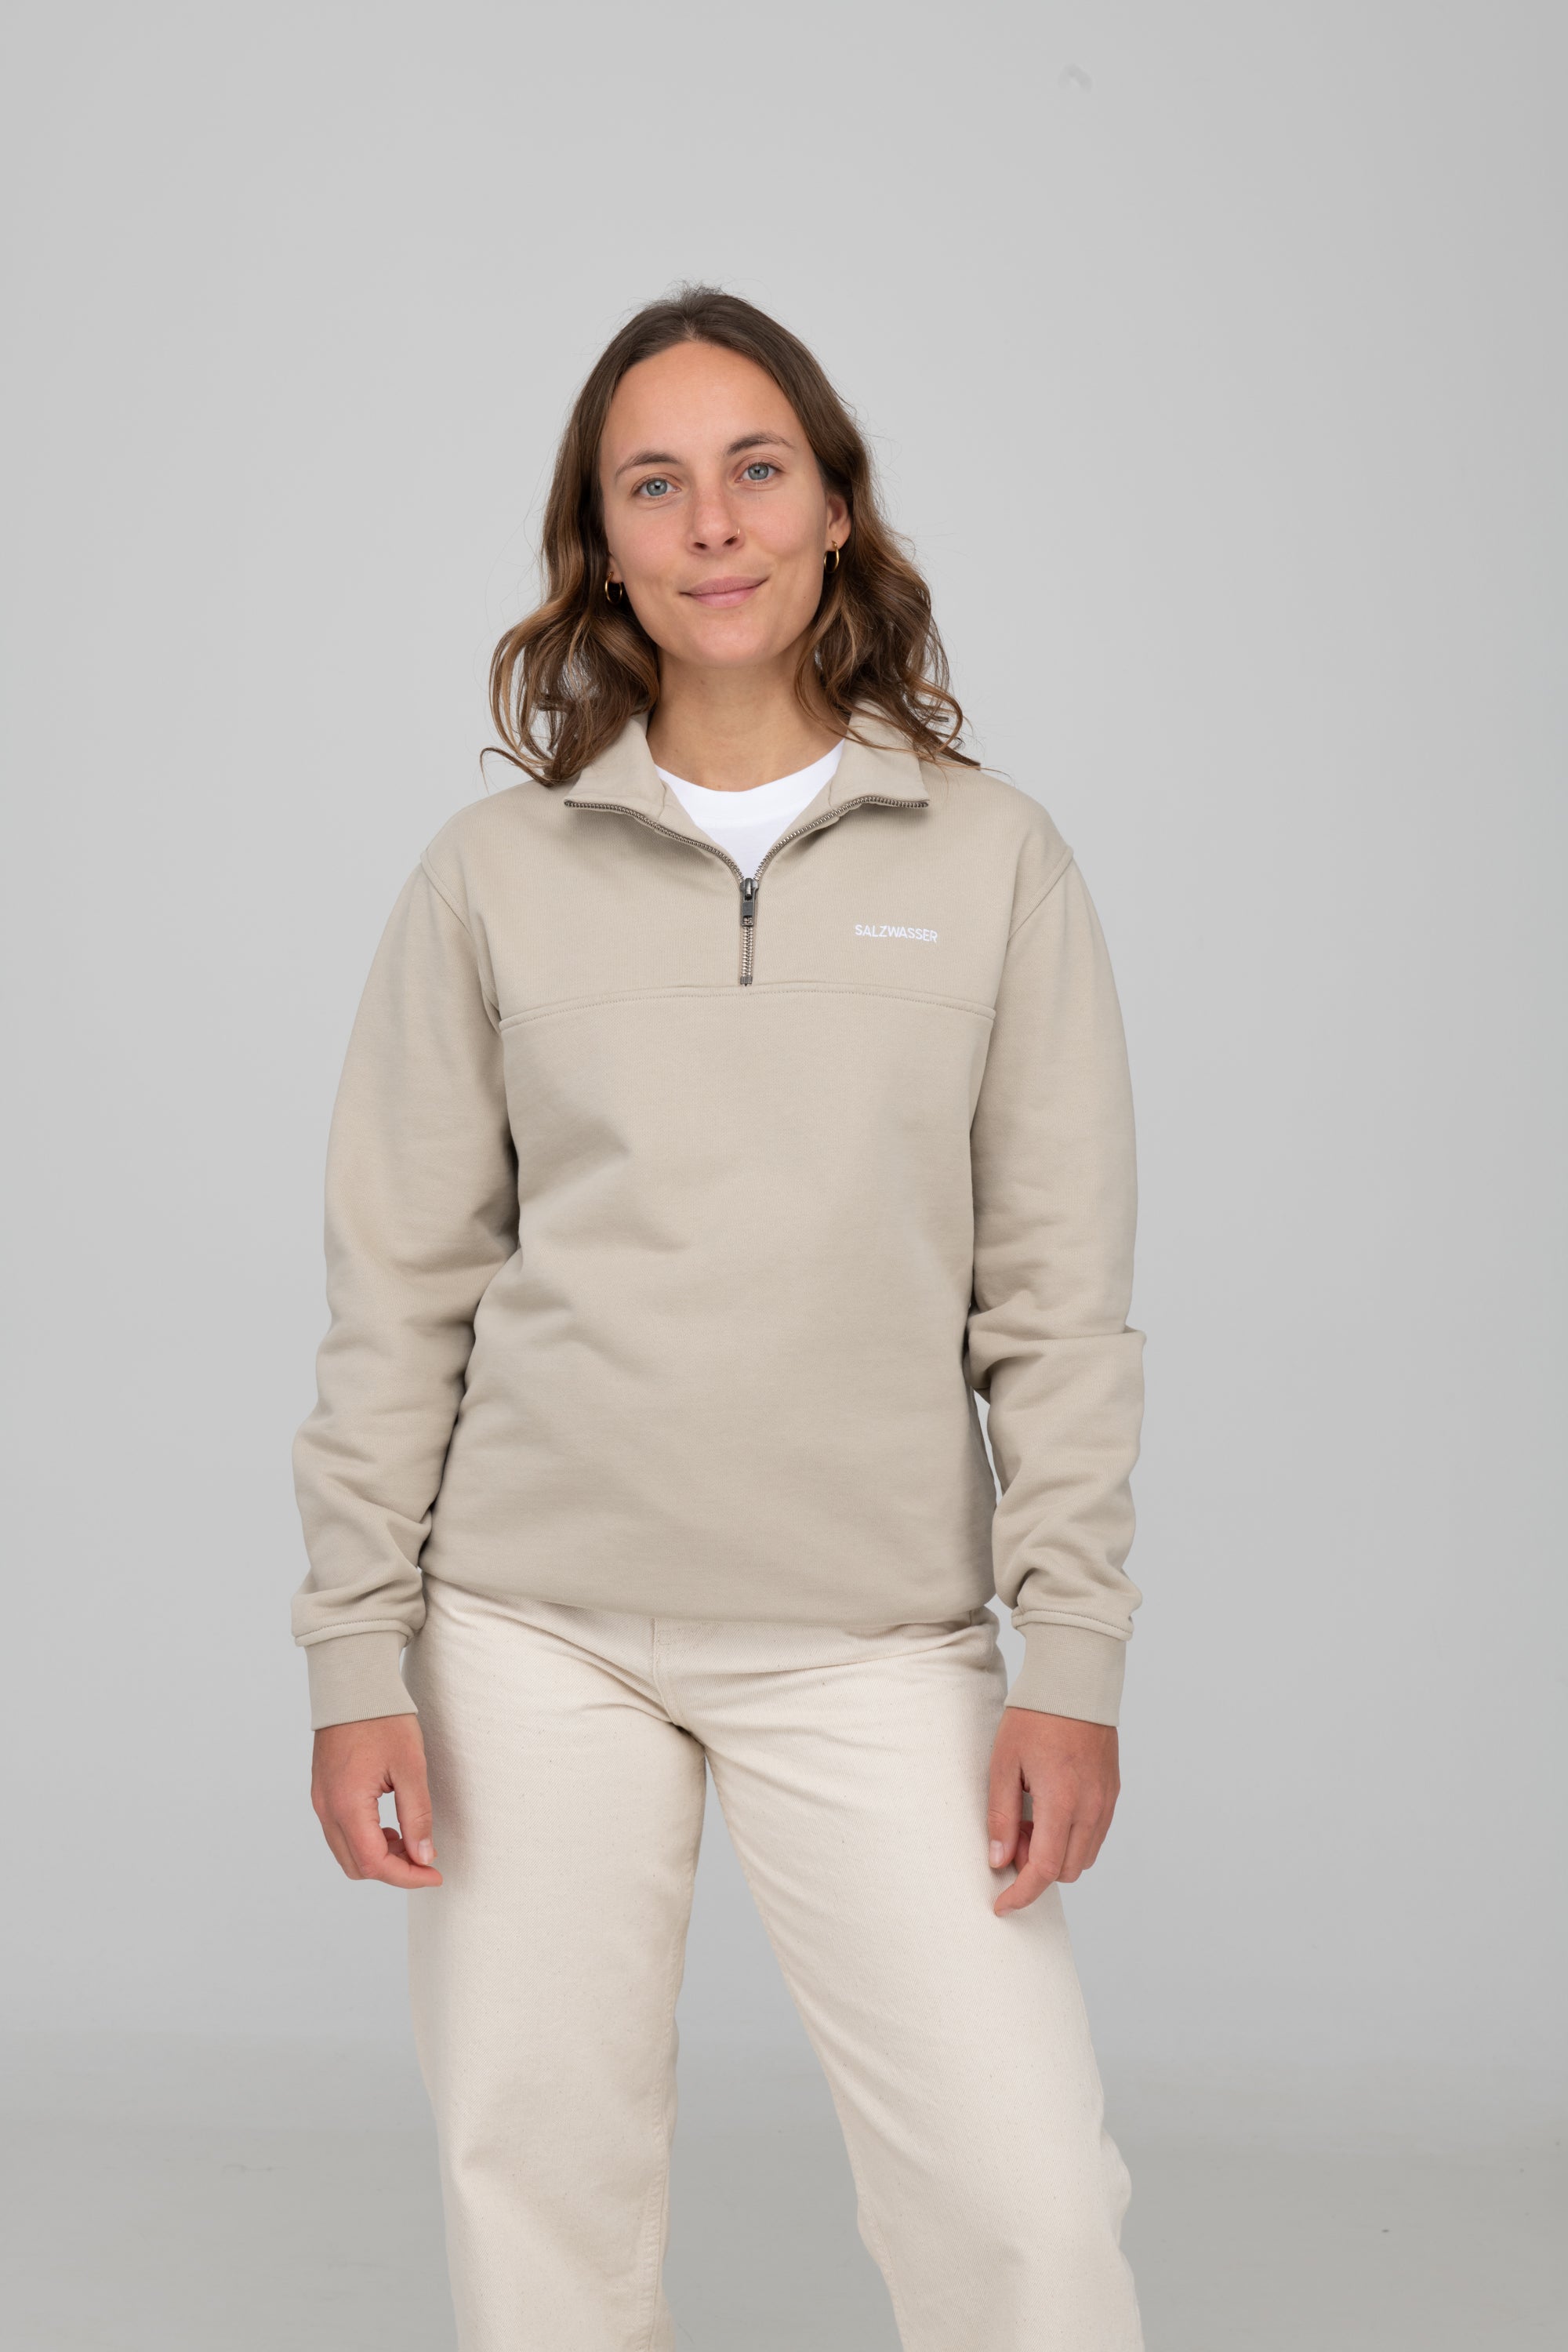 Unisex Half-Zip Sweater von SALZWASSER in Sand an Frau